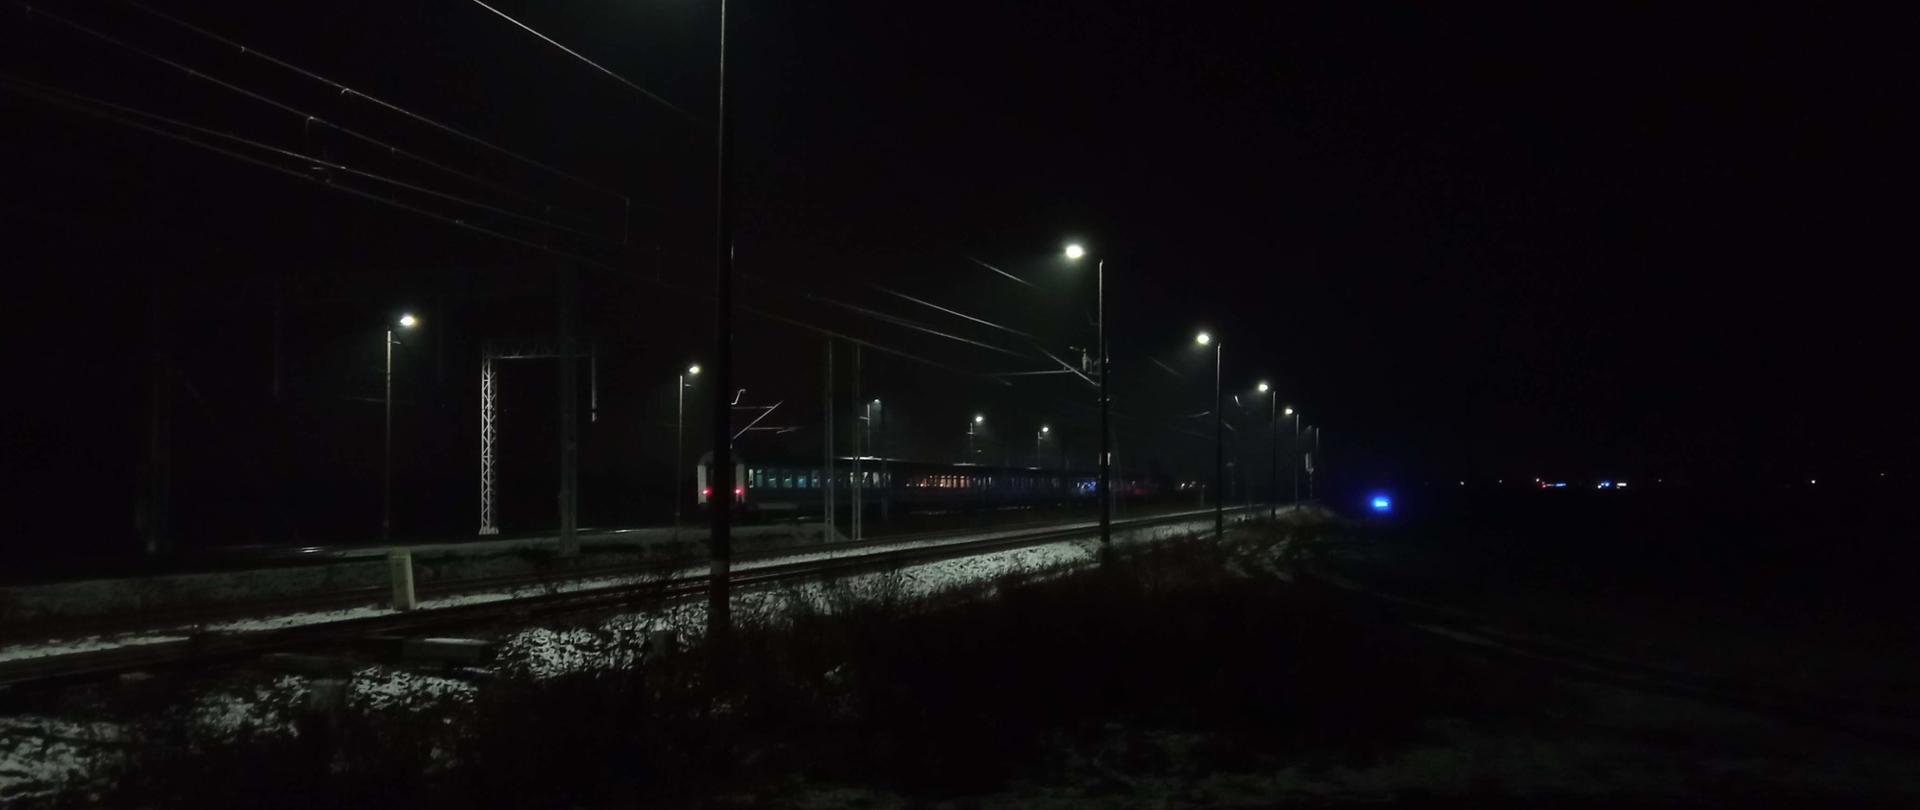 Zdjęcie przedstawia tory kolejowe i stojący pociąg